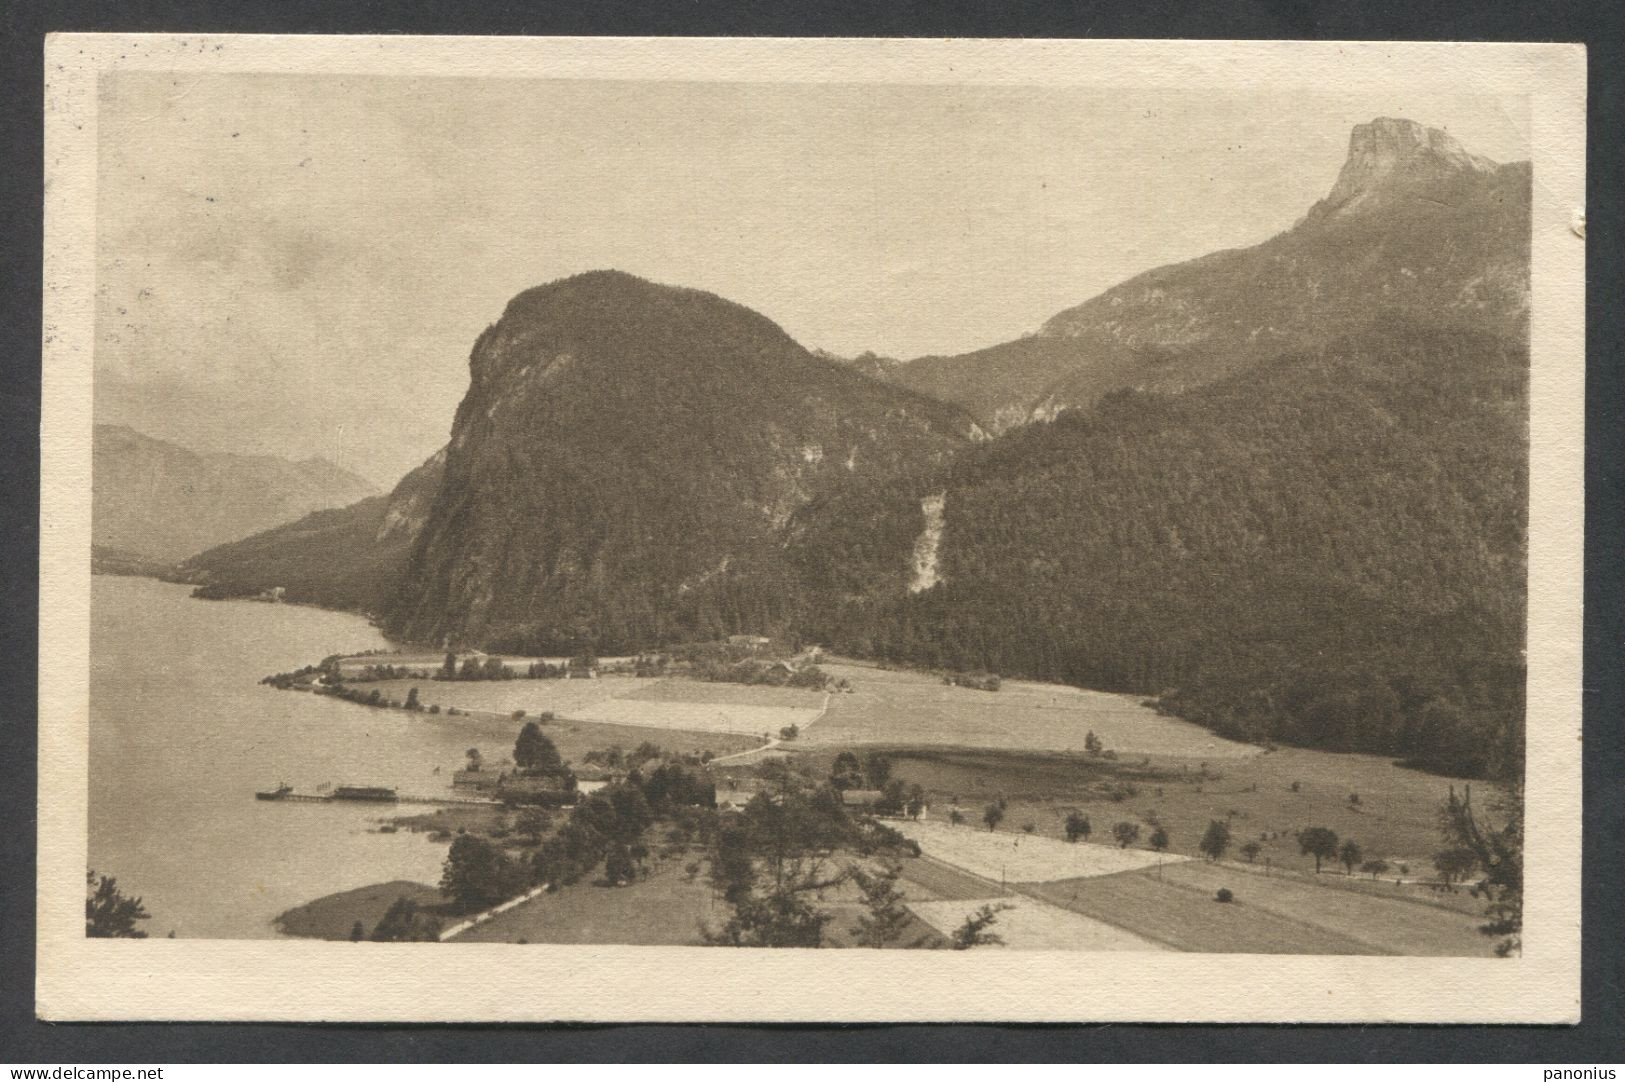 Salzkammergut Mondsee Austria, Year 1924 - Mondsee